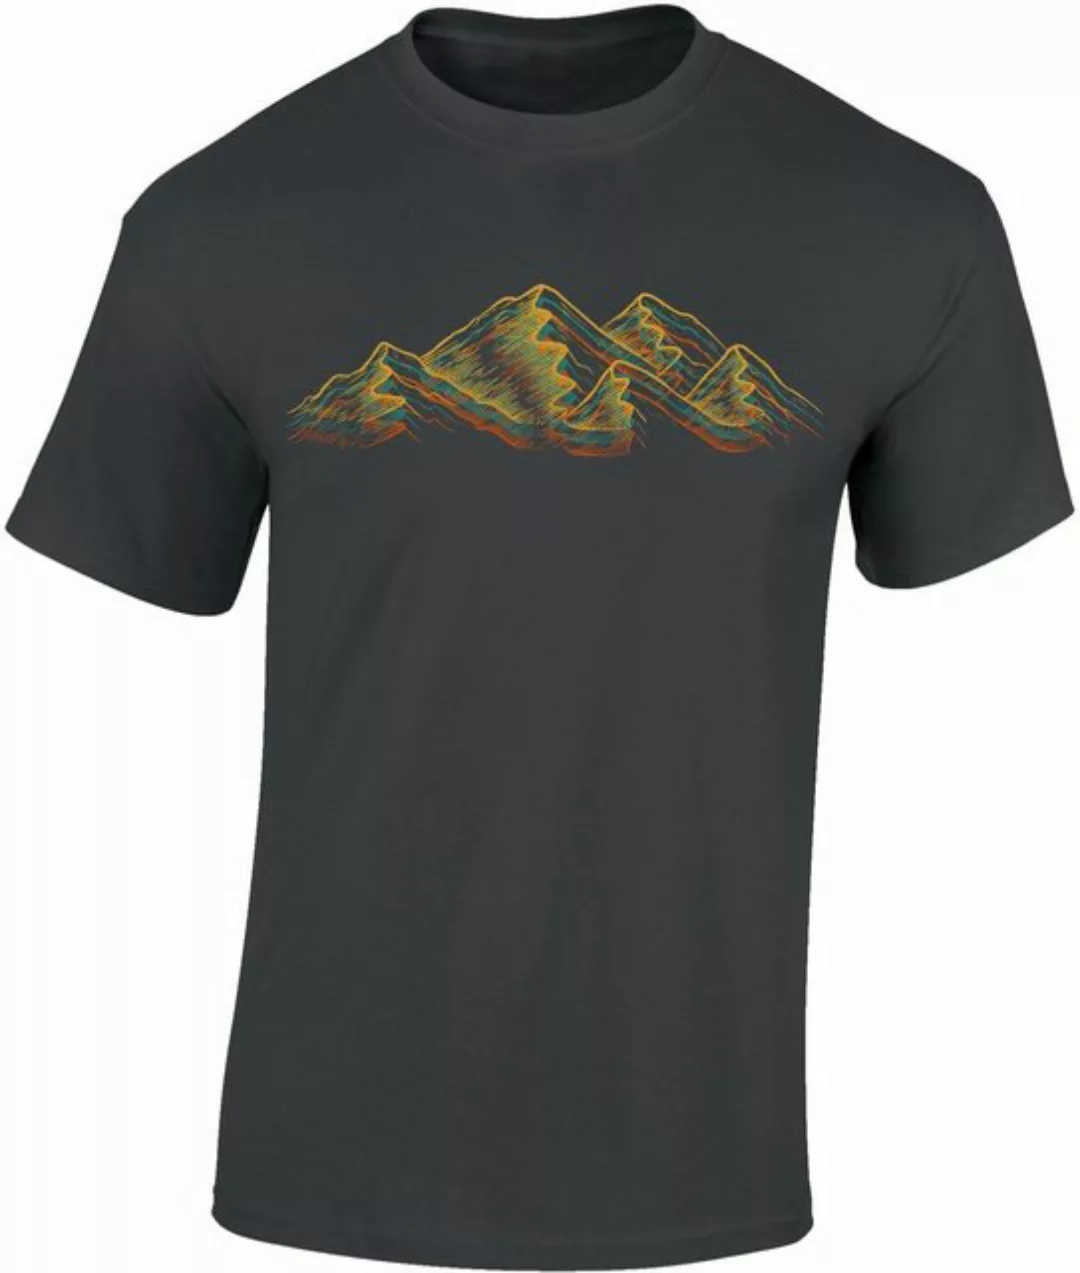 Baddery Print-Shirt Wander Shirt : "Alpen" - Kletter T-Shirt für Wanderfreu günstig online kaufen